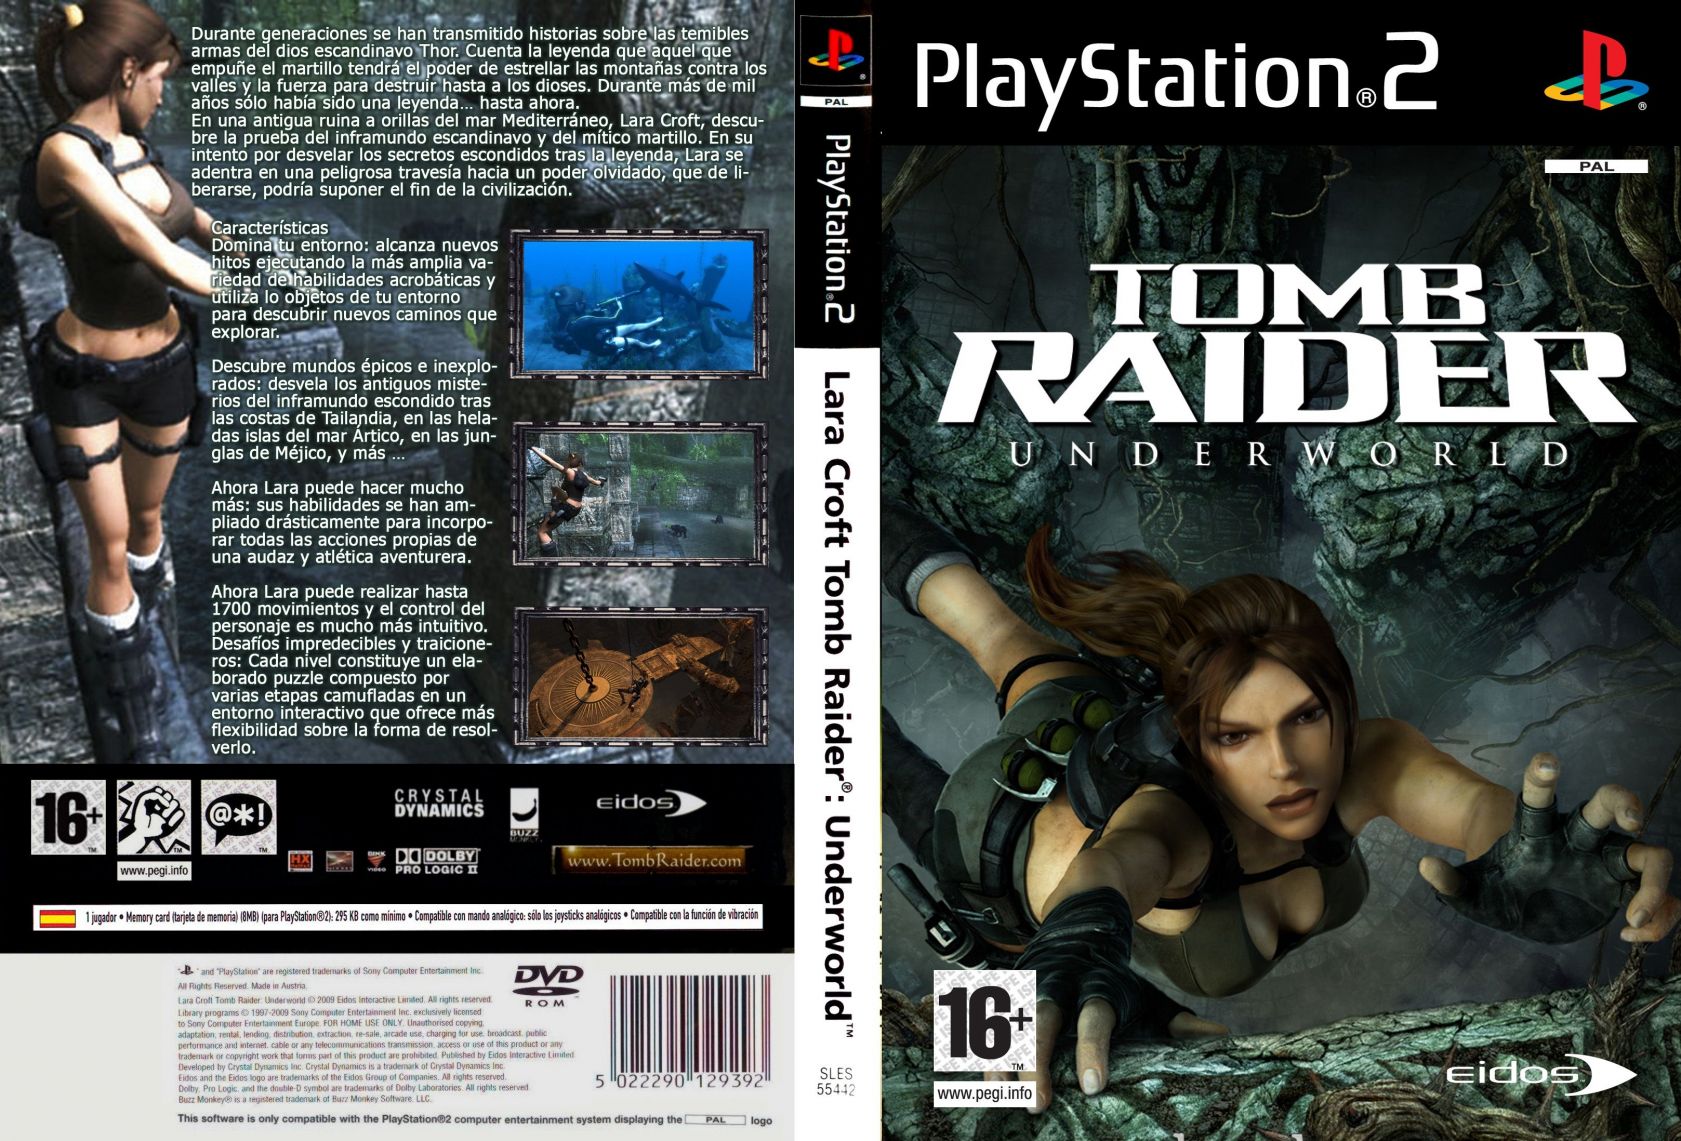 tomb raider underworld ppsspp download